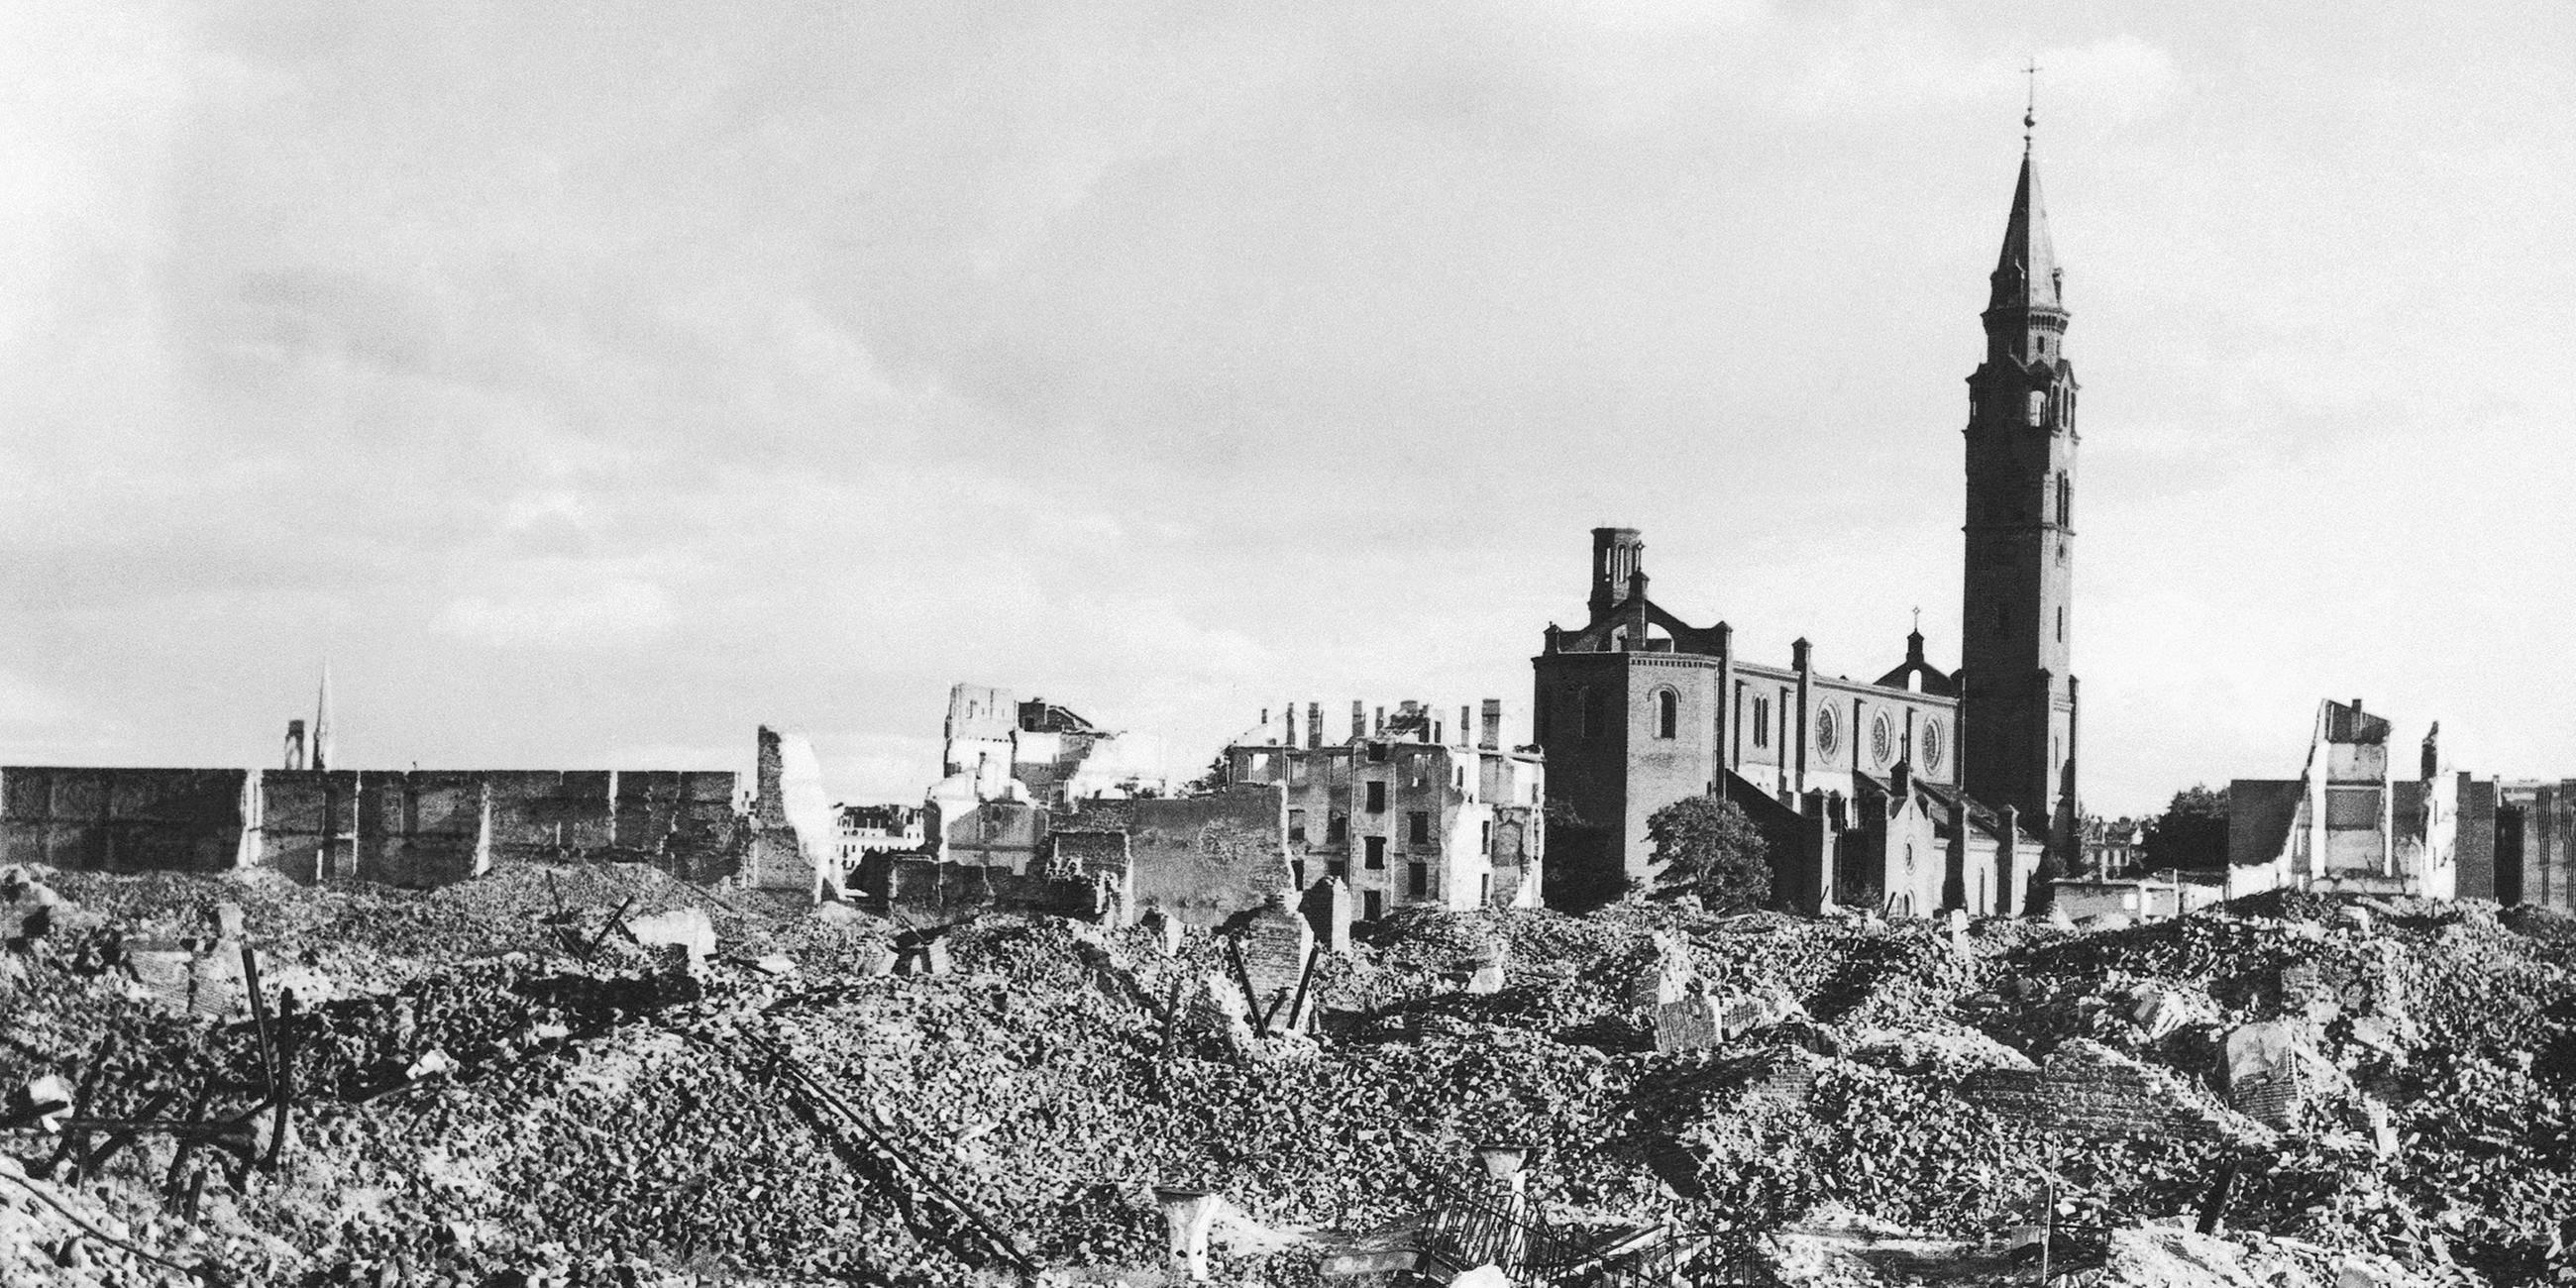 Blick auf völlig zerstörte Häuser und Steine in Warschau, aufgeneommen am 13.10.1945 